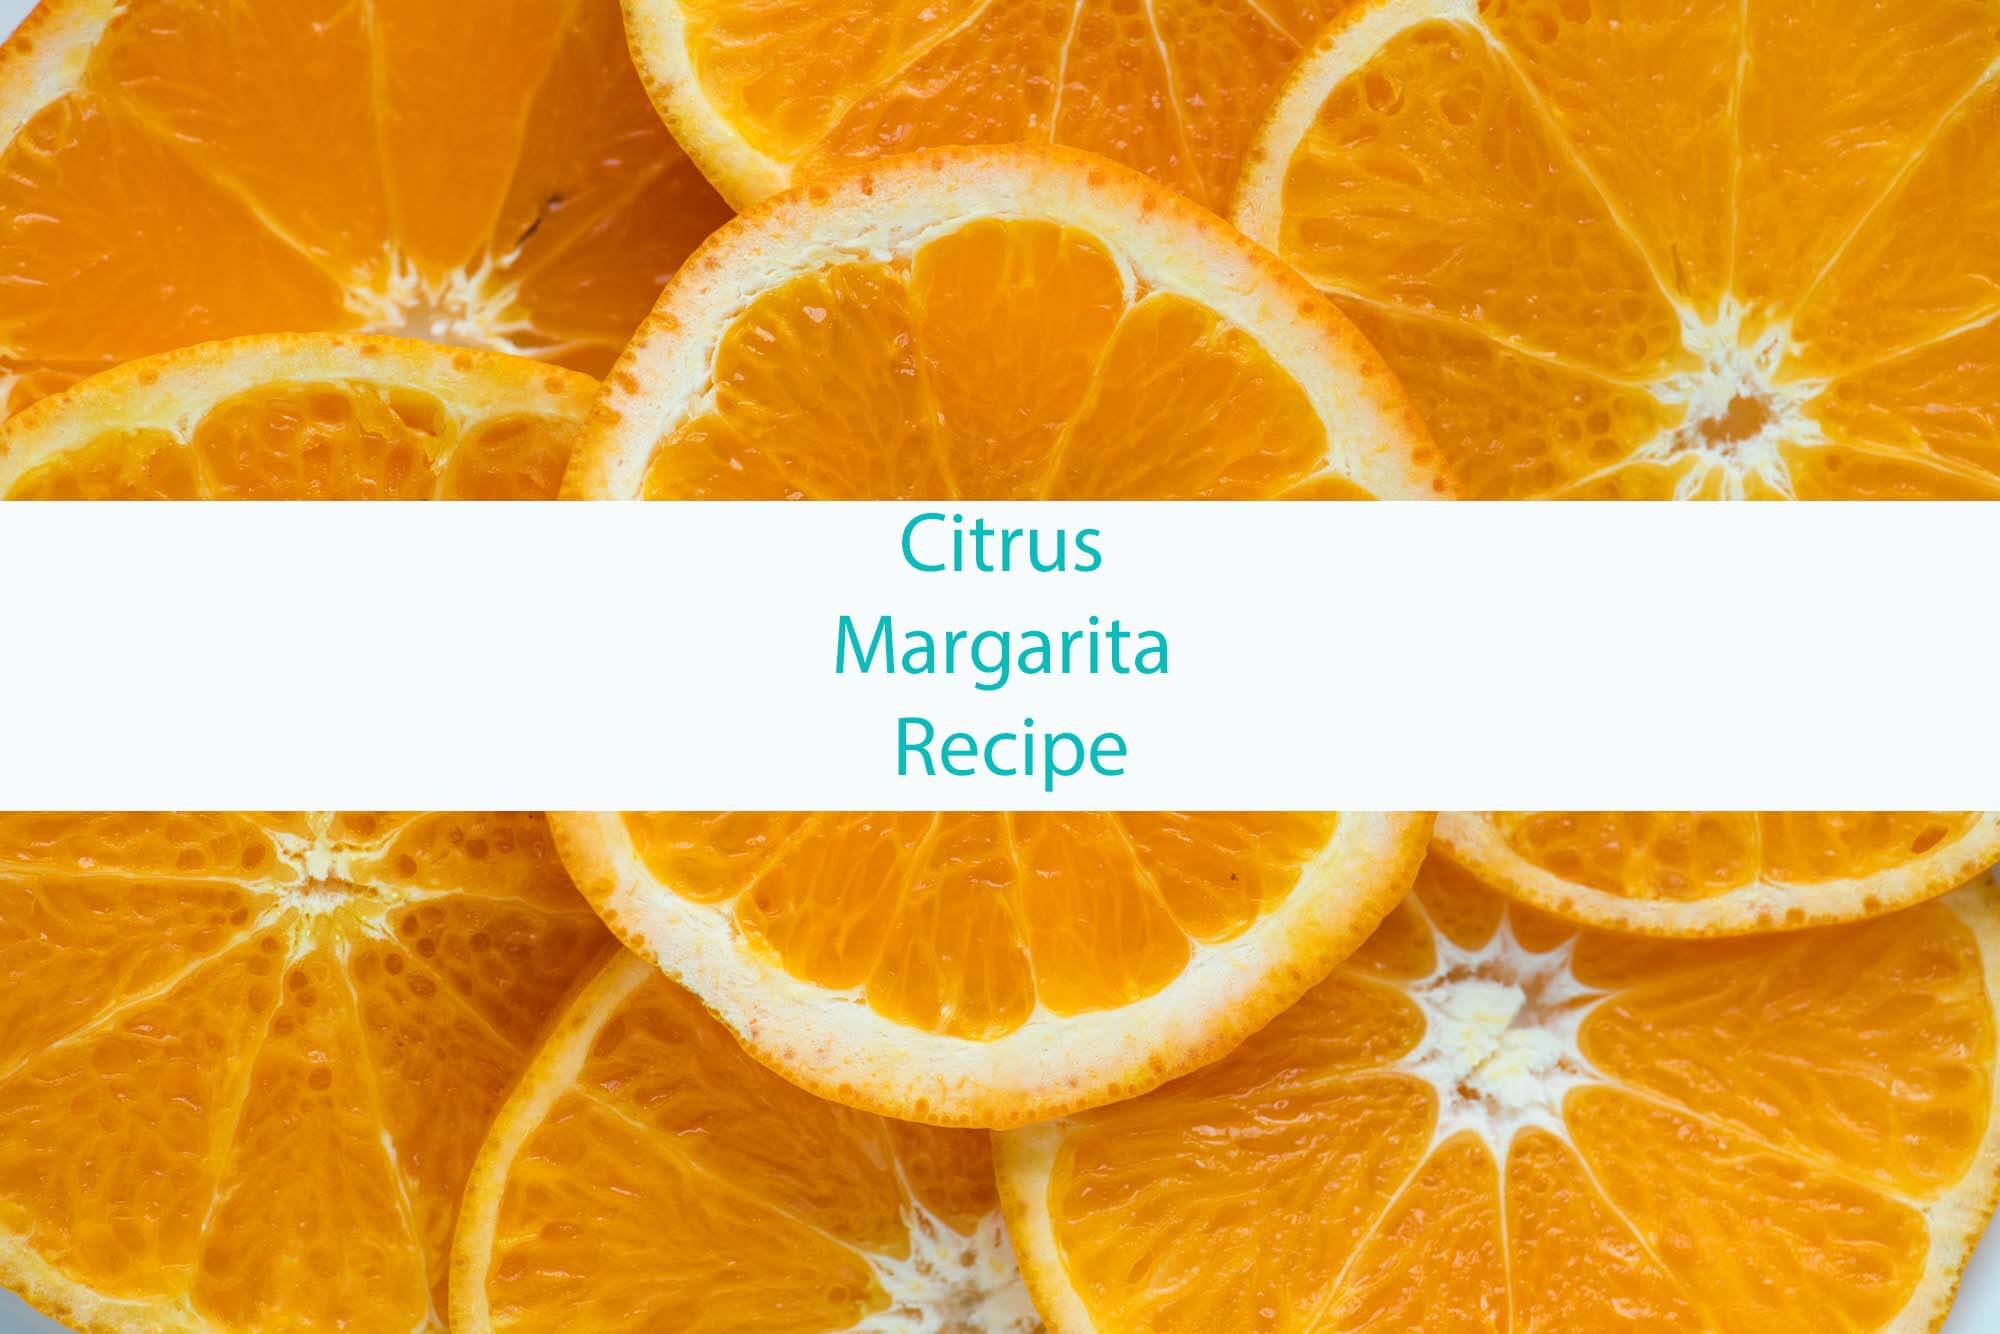 Citrus Margarita Recipe